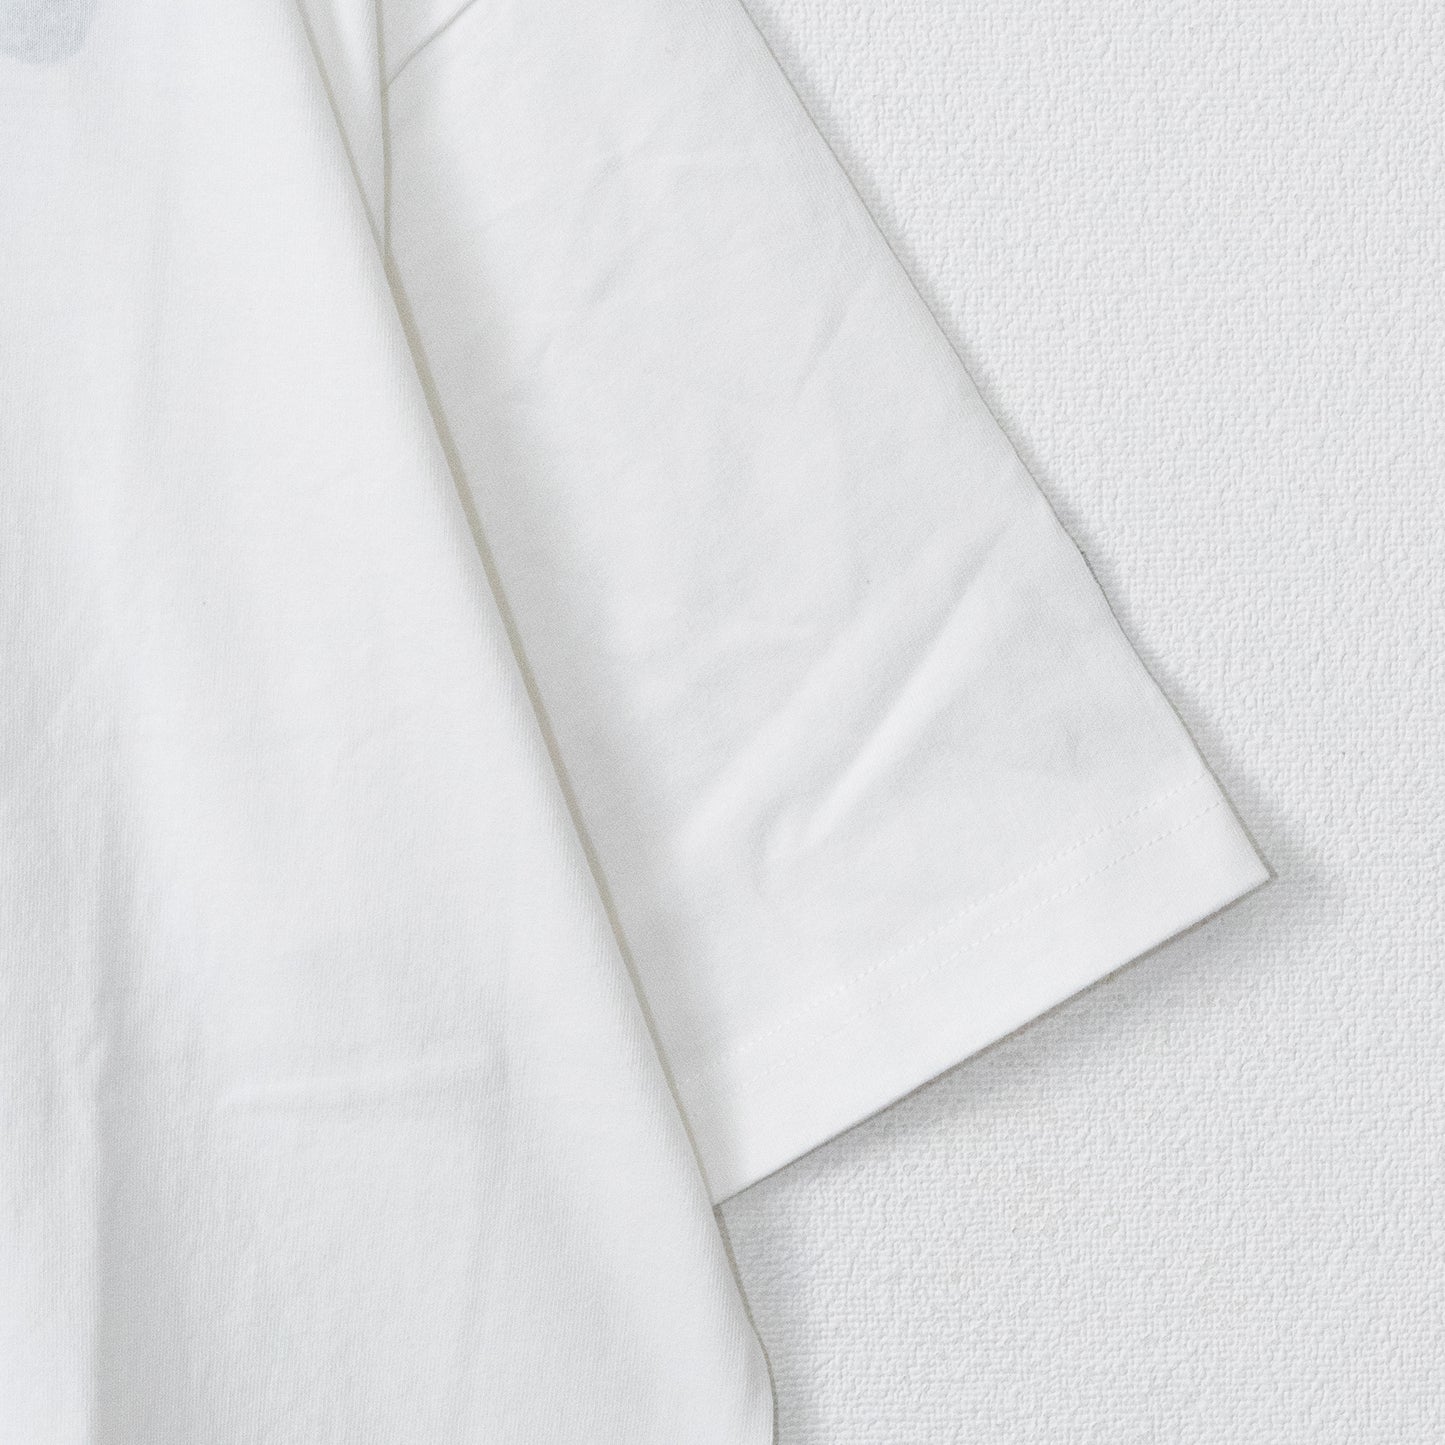 パックマン 公式 ゴースト刺繍 半袖Tシャツ WHITE